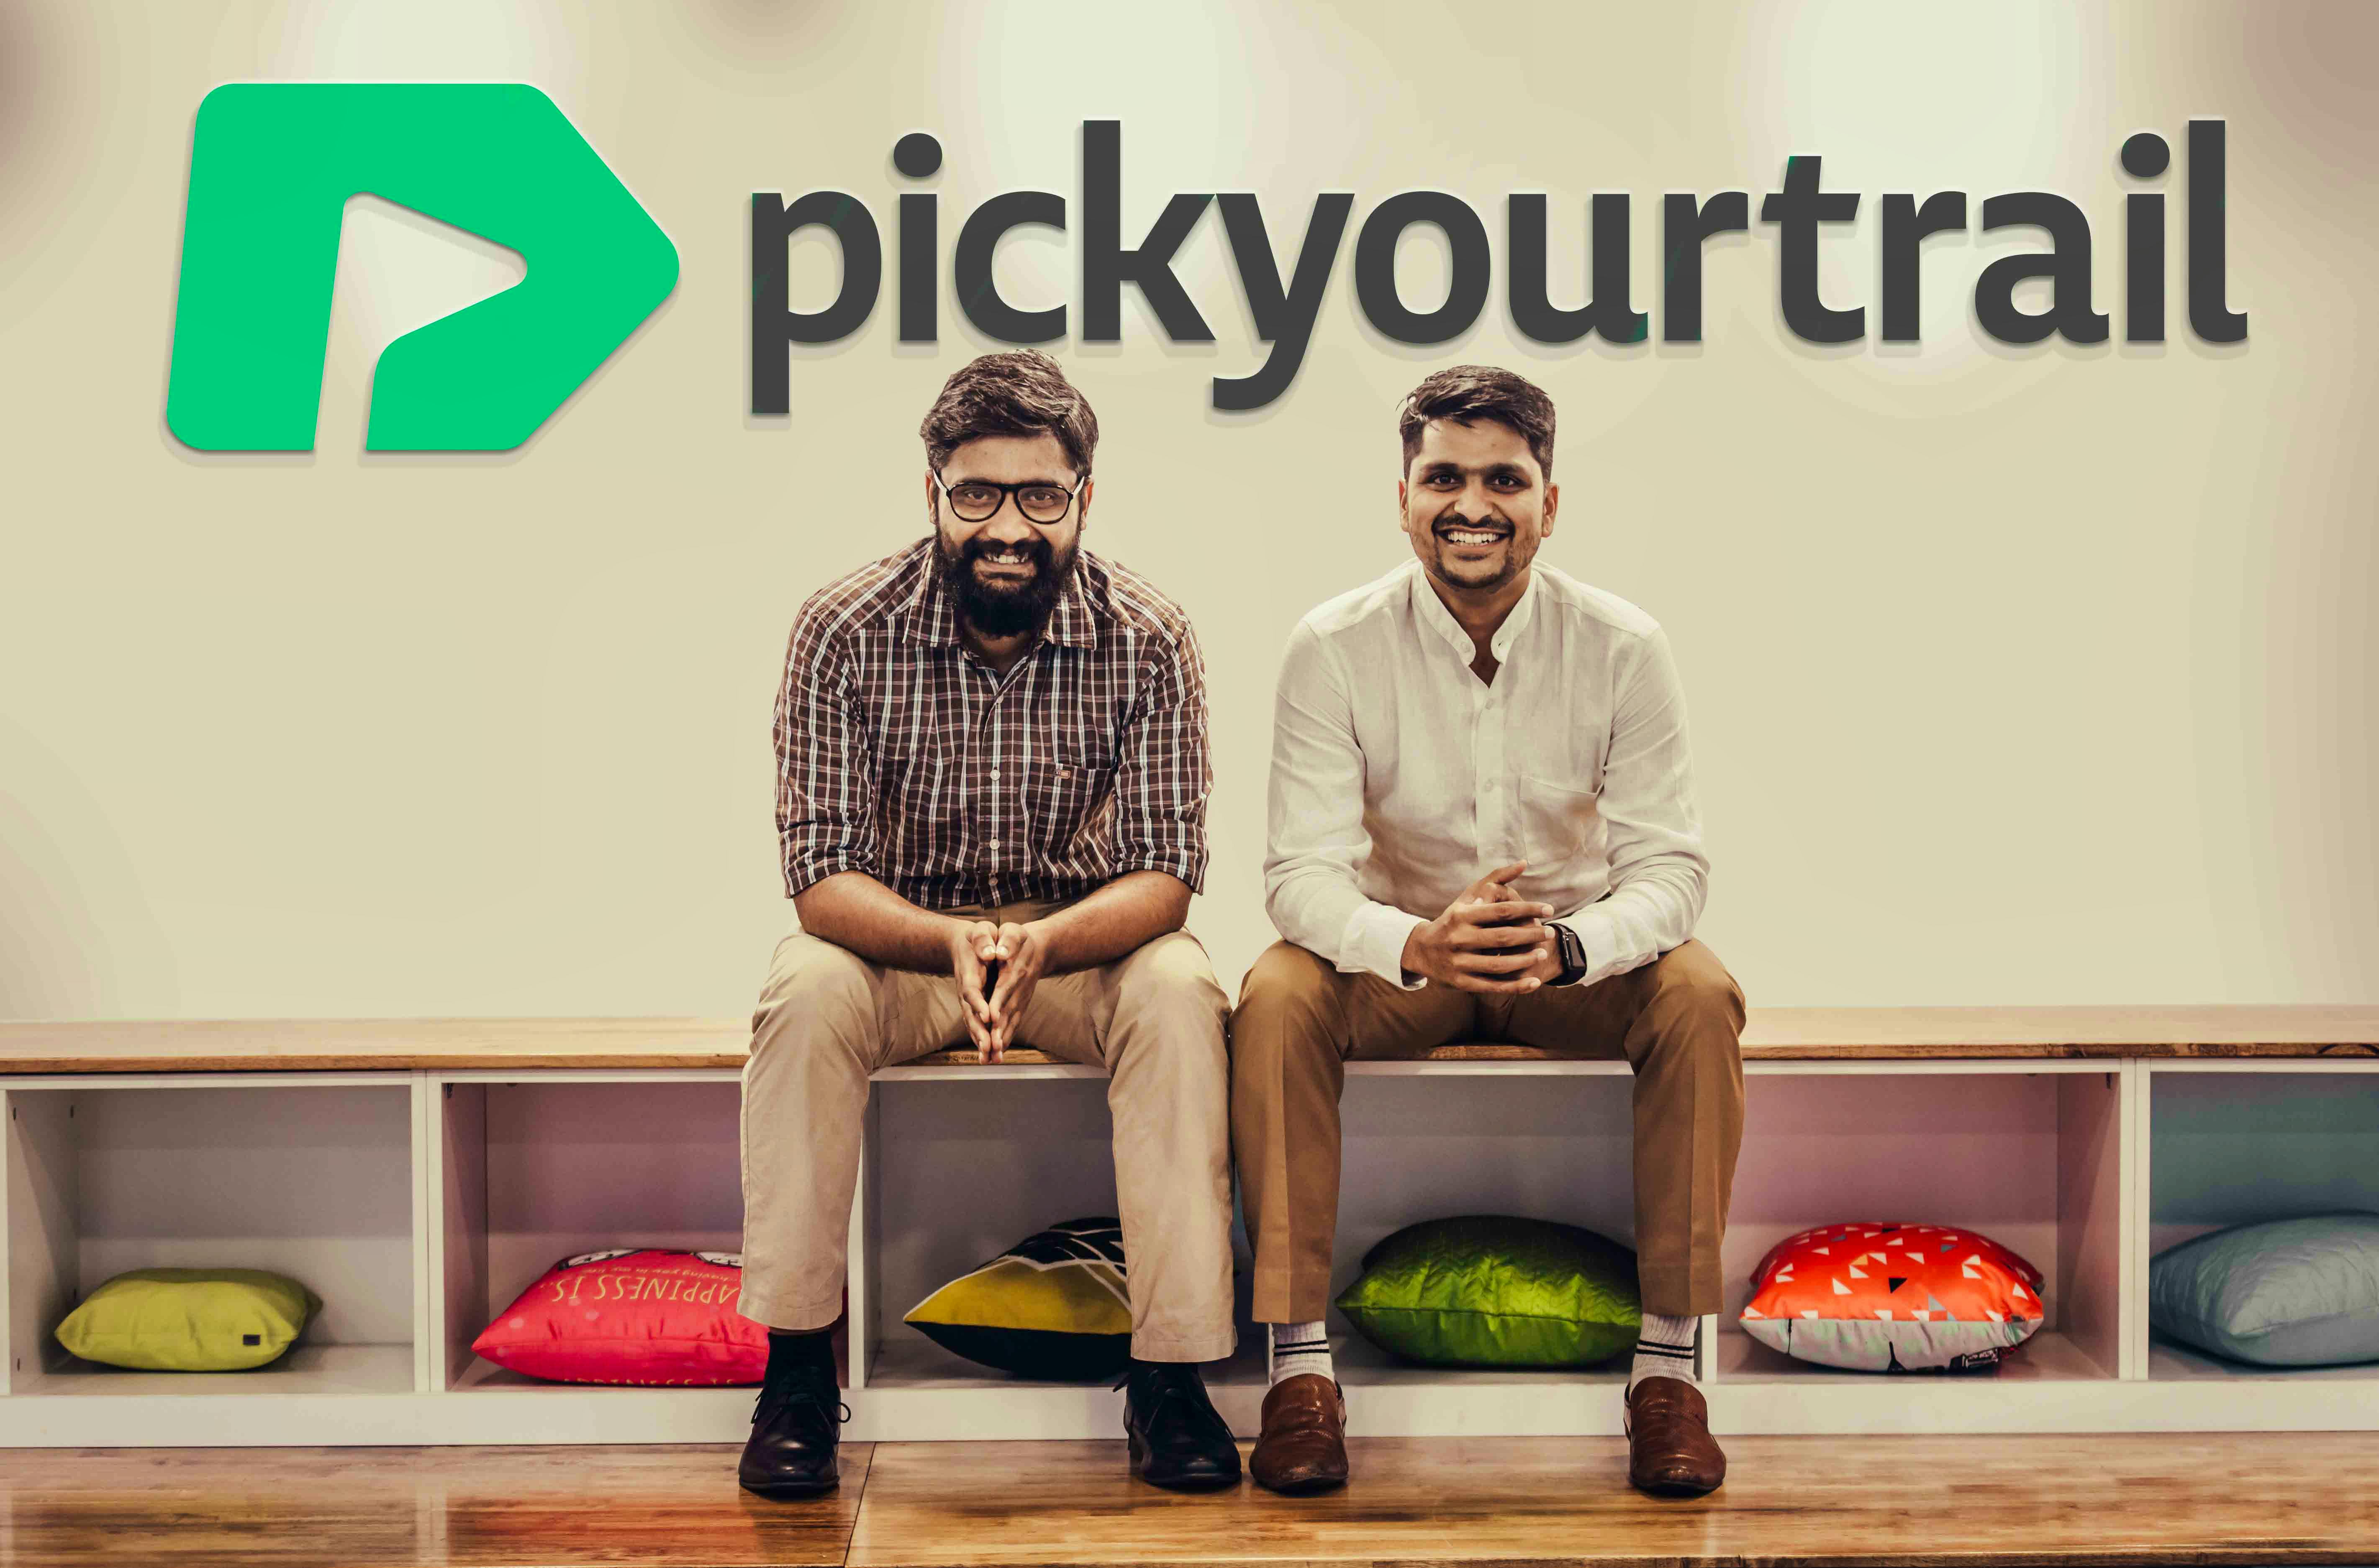 Pickyourtrail founders (L) Srinath Shankar and (R) Hari Ganapathy